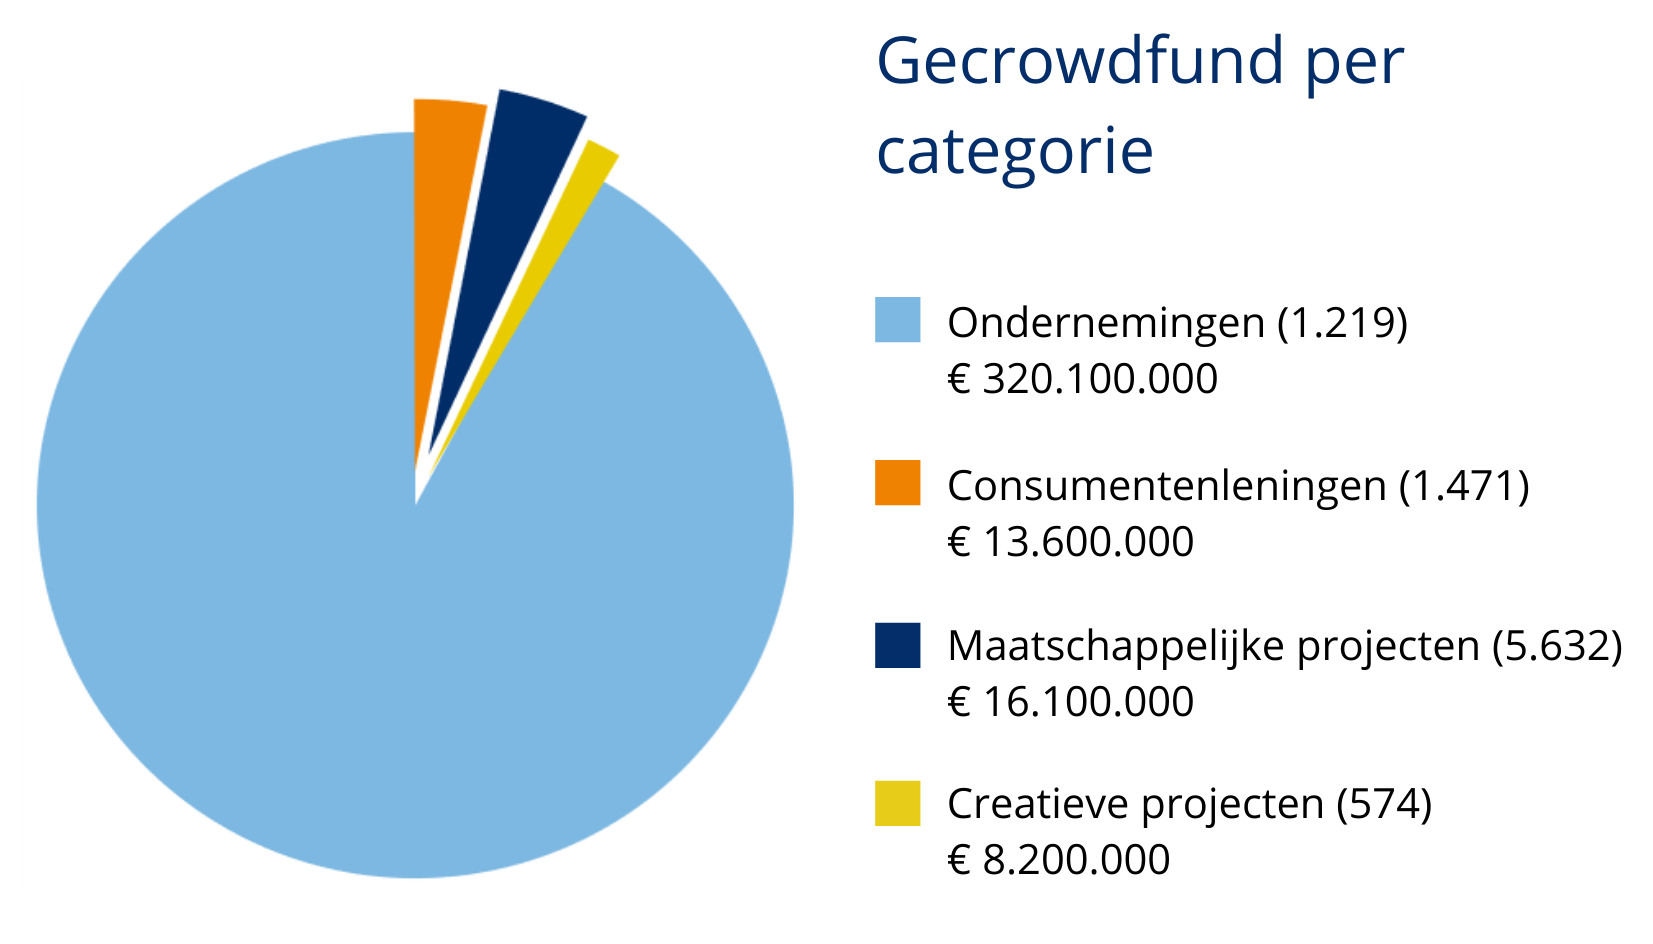 crowdfunding cijfers per categorie